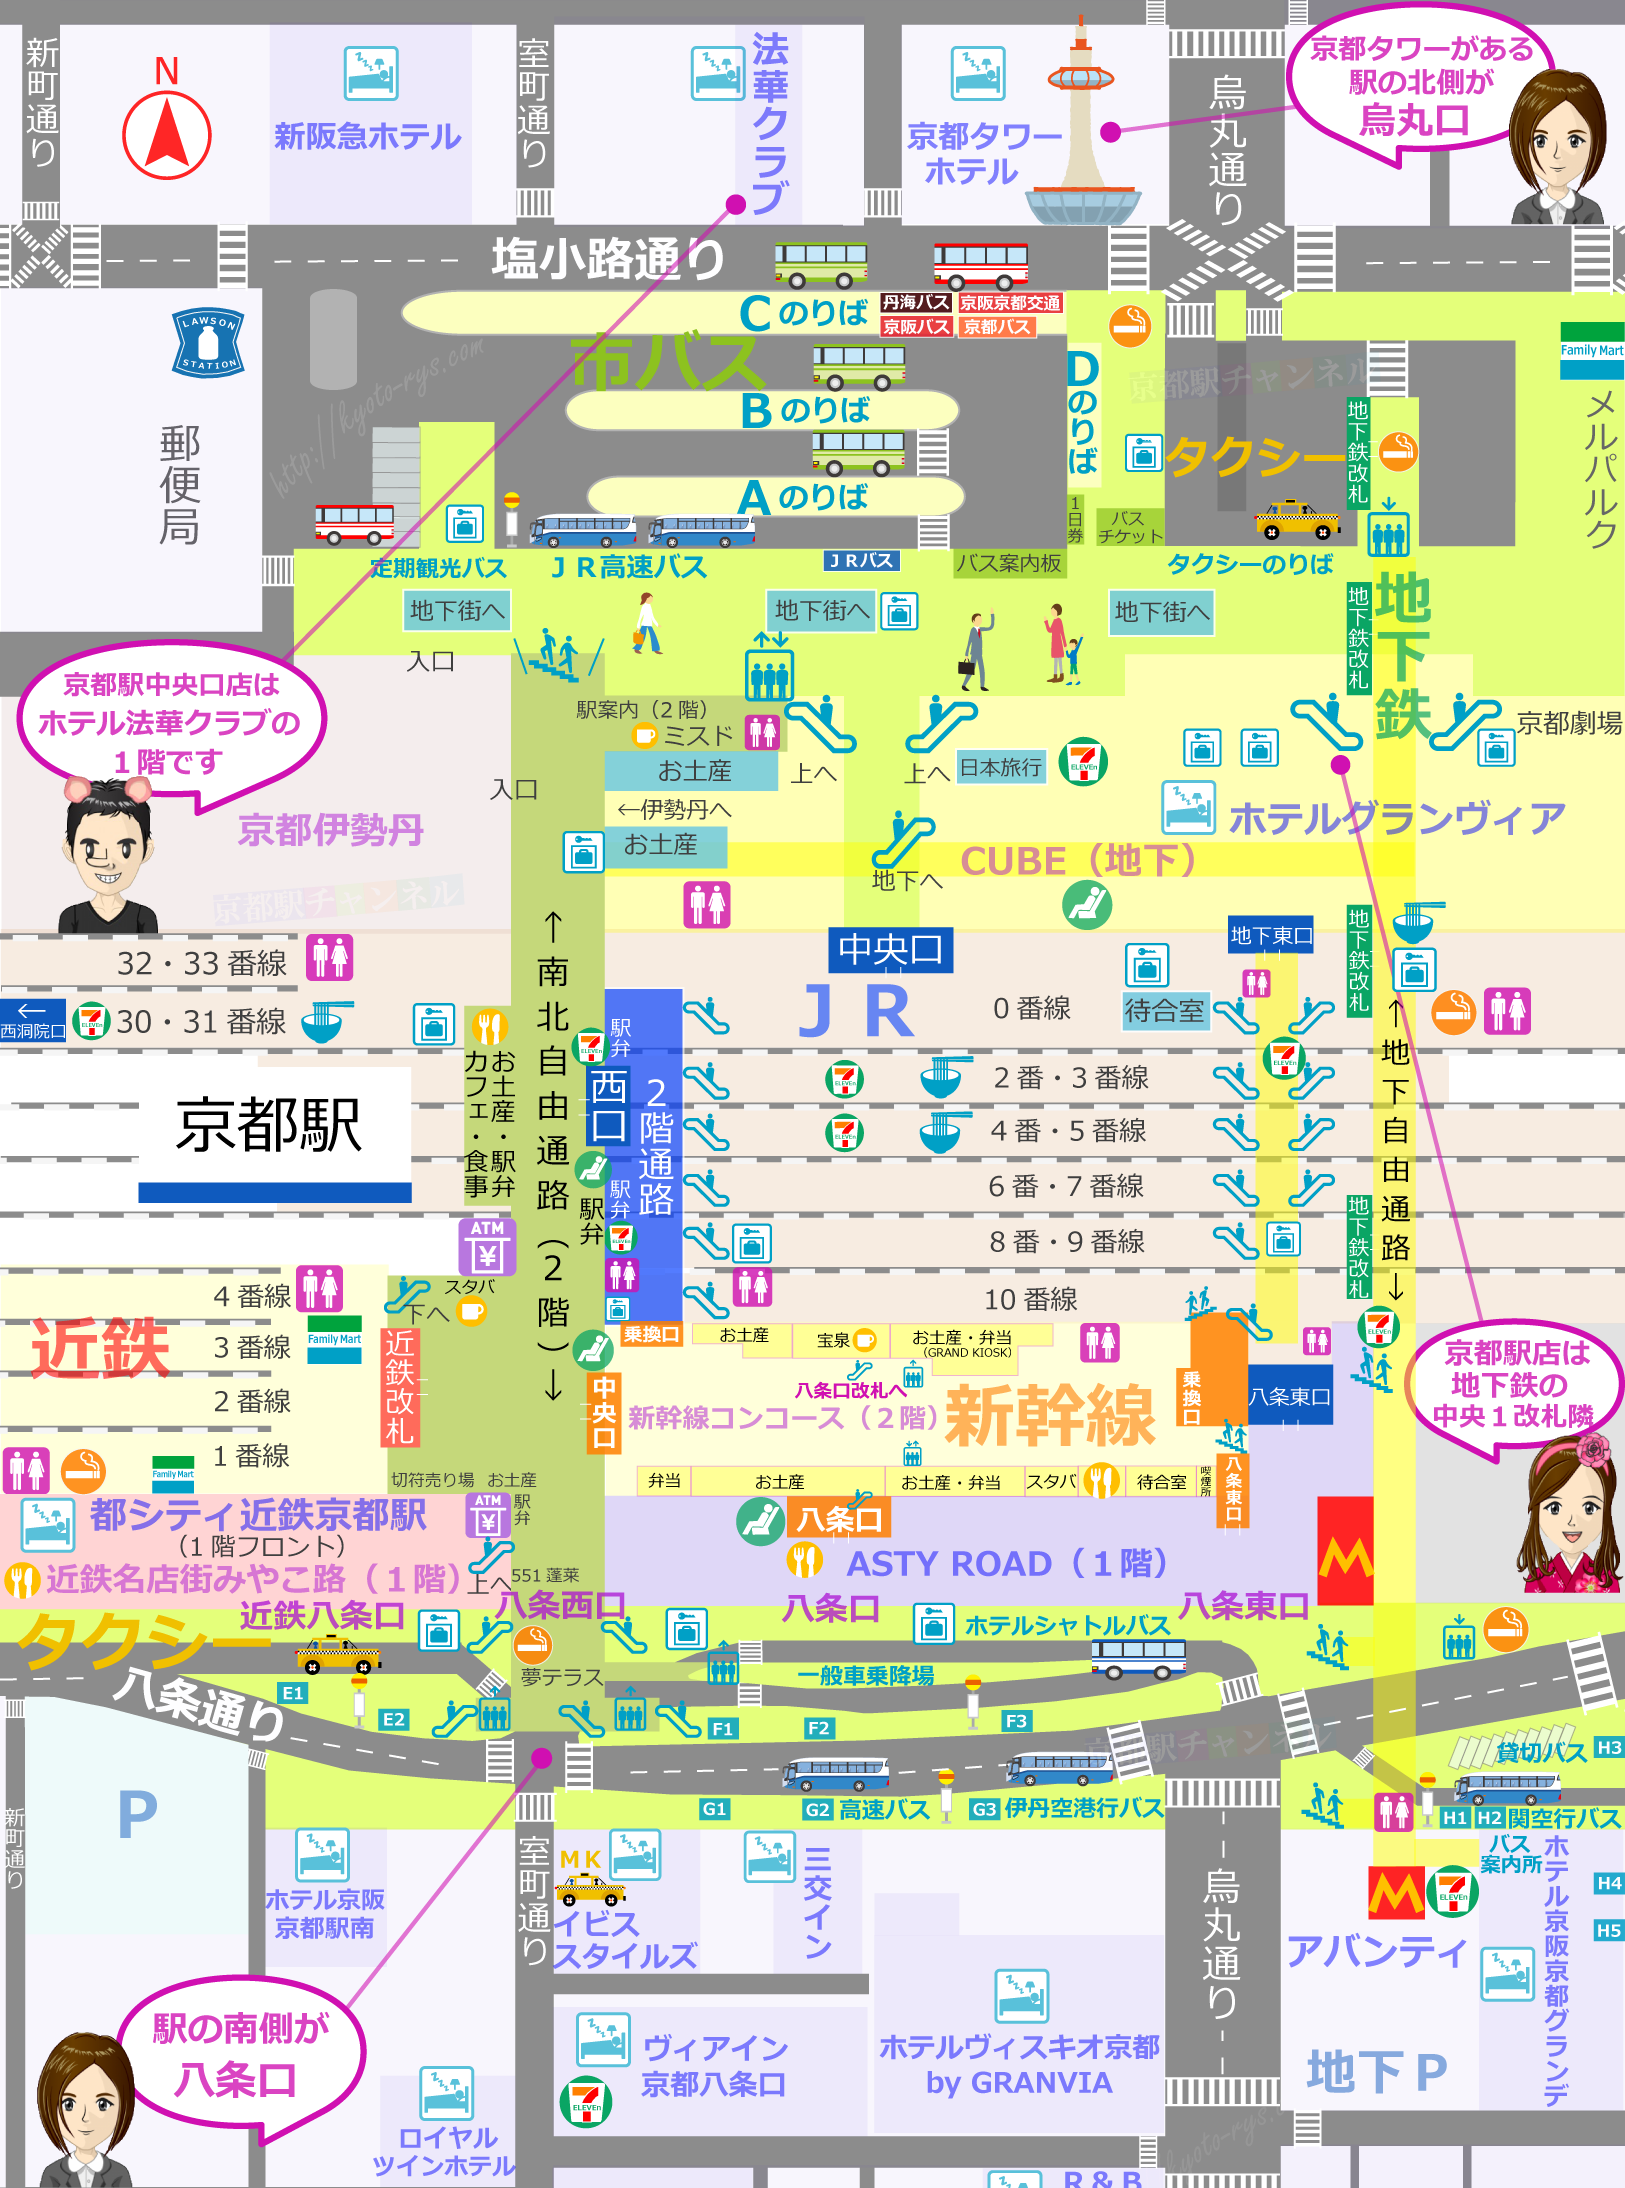 京都駅の構内図と小川珈琲のマップ